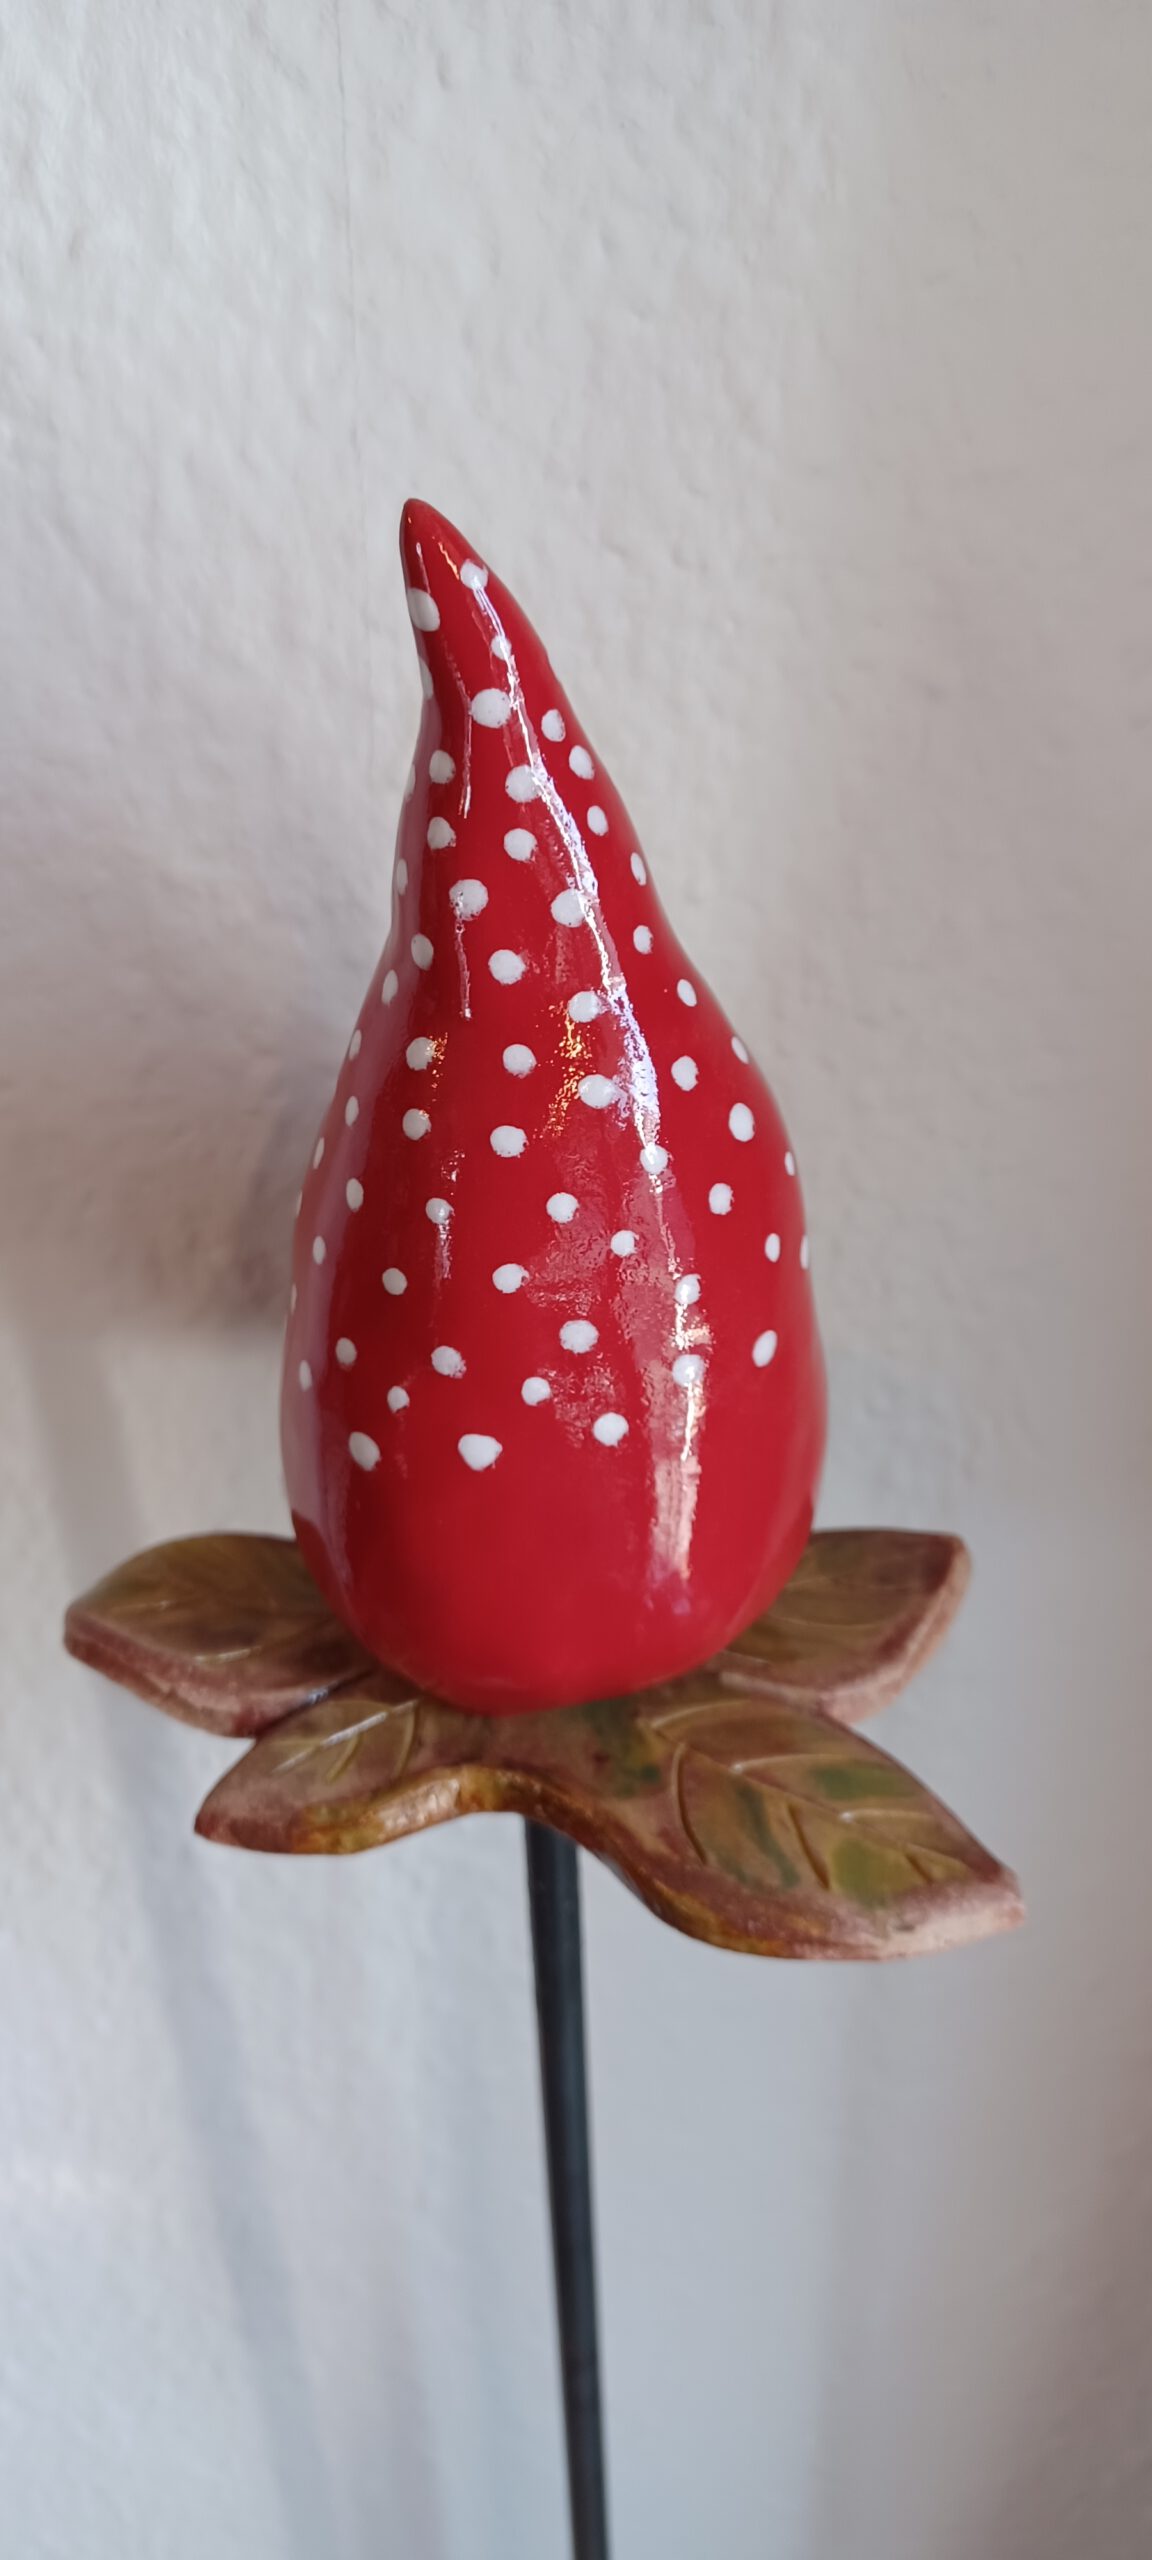 Keramik Gartenstecker, orange rote Fantasie Blume, originelle Keramik Stab Spitze, KeraMik von Herz zu Herz, Keramik Geschenk für den Garten, Stelen Spitze